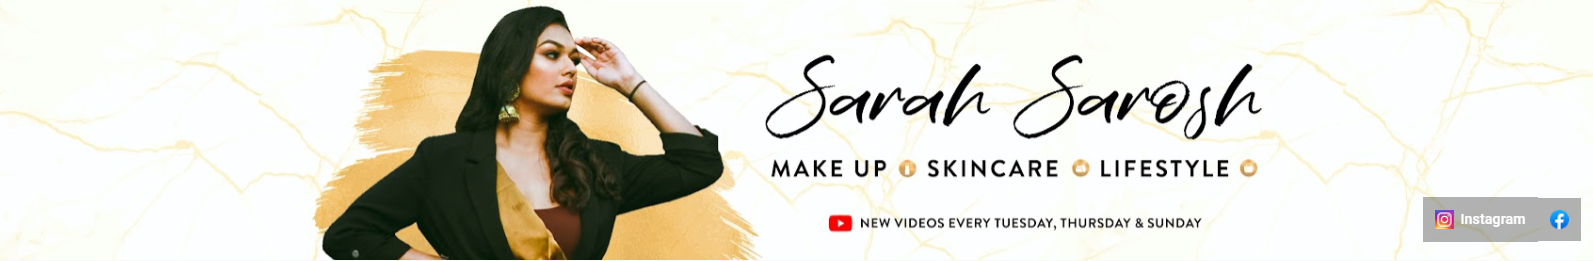 Sarah Sarosh YouTube Banner